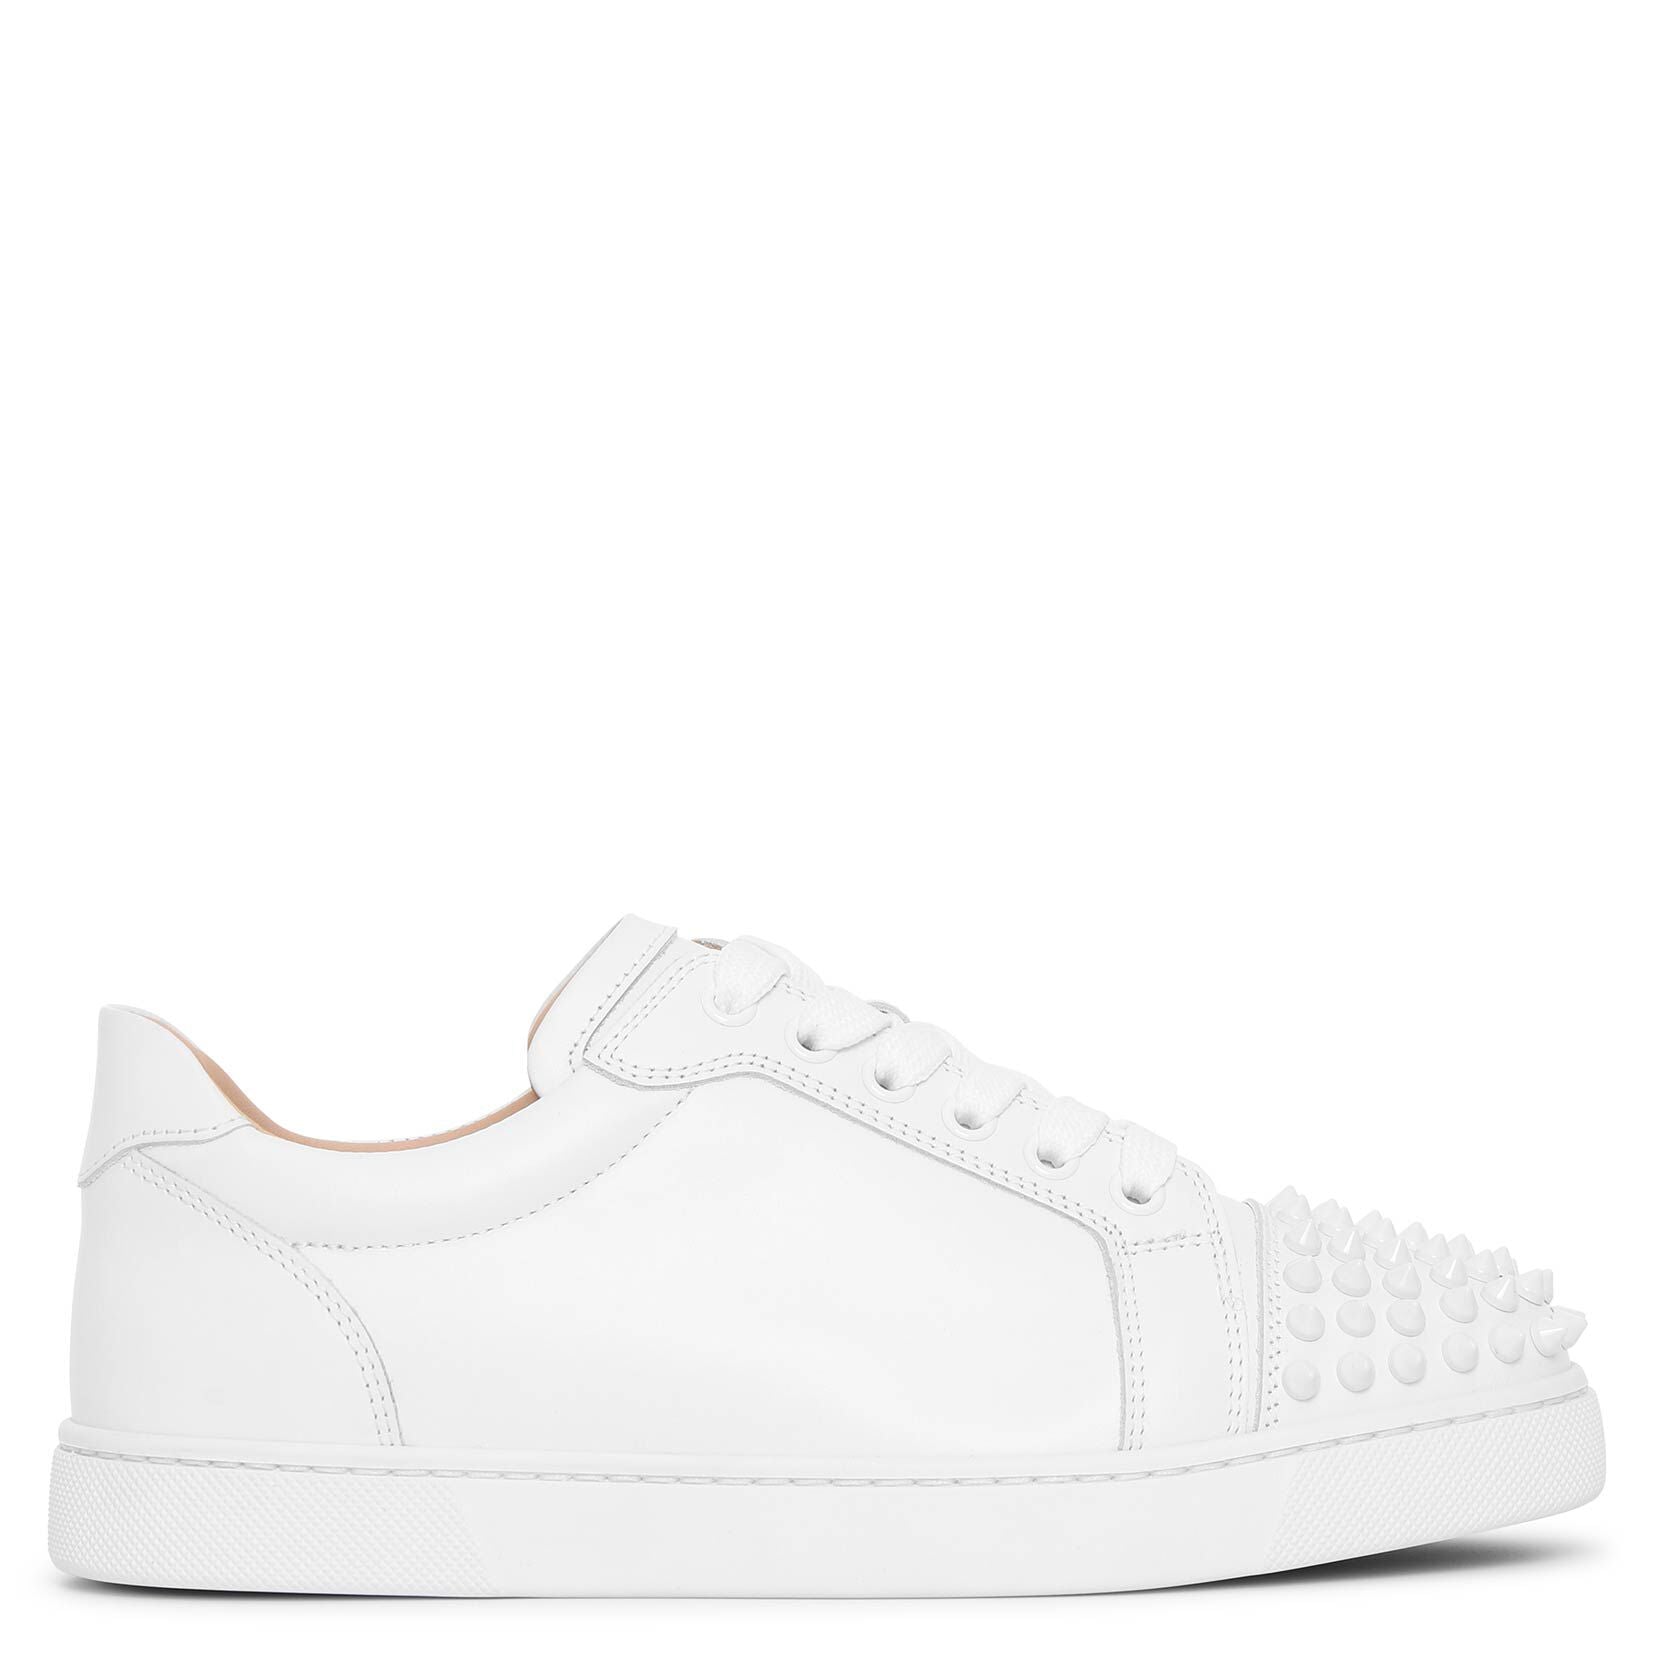 Vieira Spikes flat white sneakers